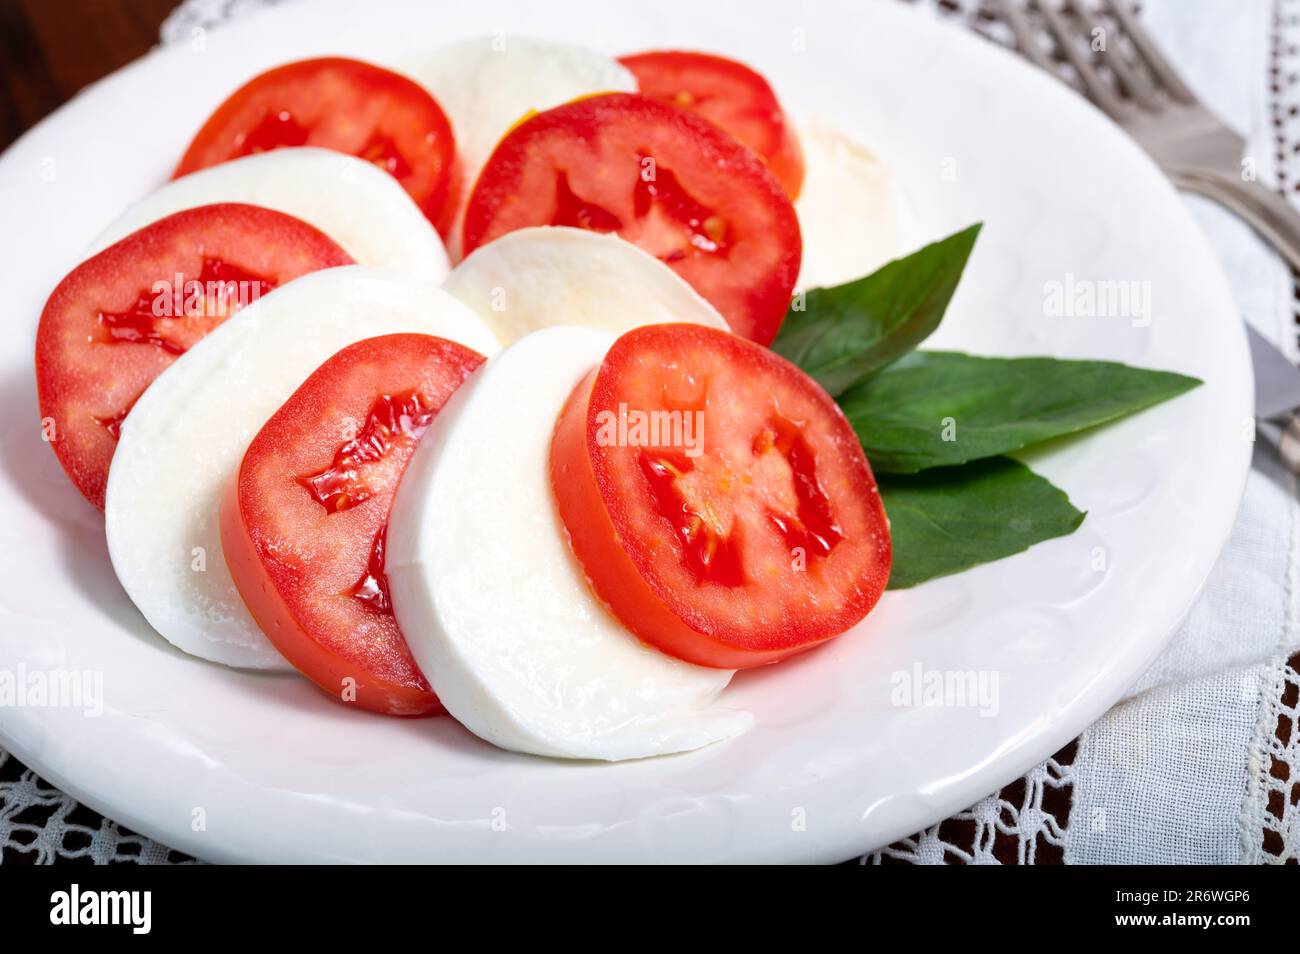 Itaianische vegetarische Speisen, frischer Caprese-Salat mit weißem, weichem italienischen Mozzarella-Käse, rote Tomaten und grünes Basilikum mit Olivenöl. Stockfoto